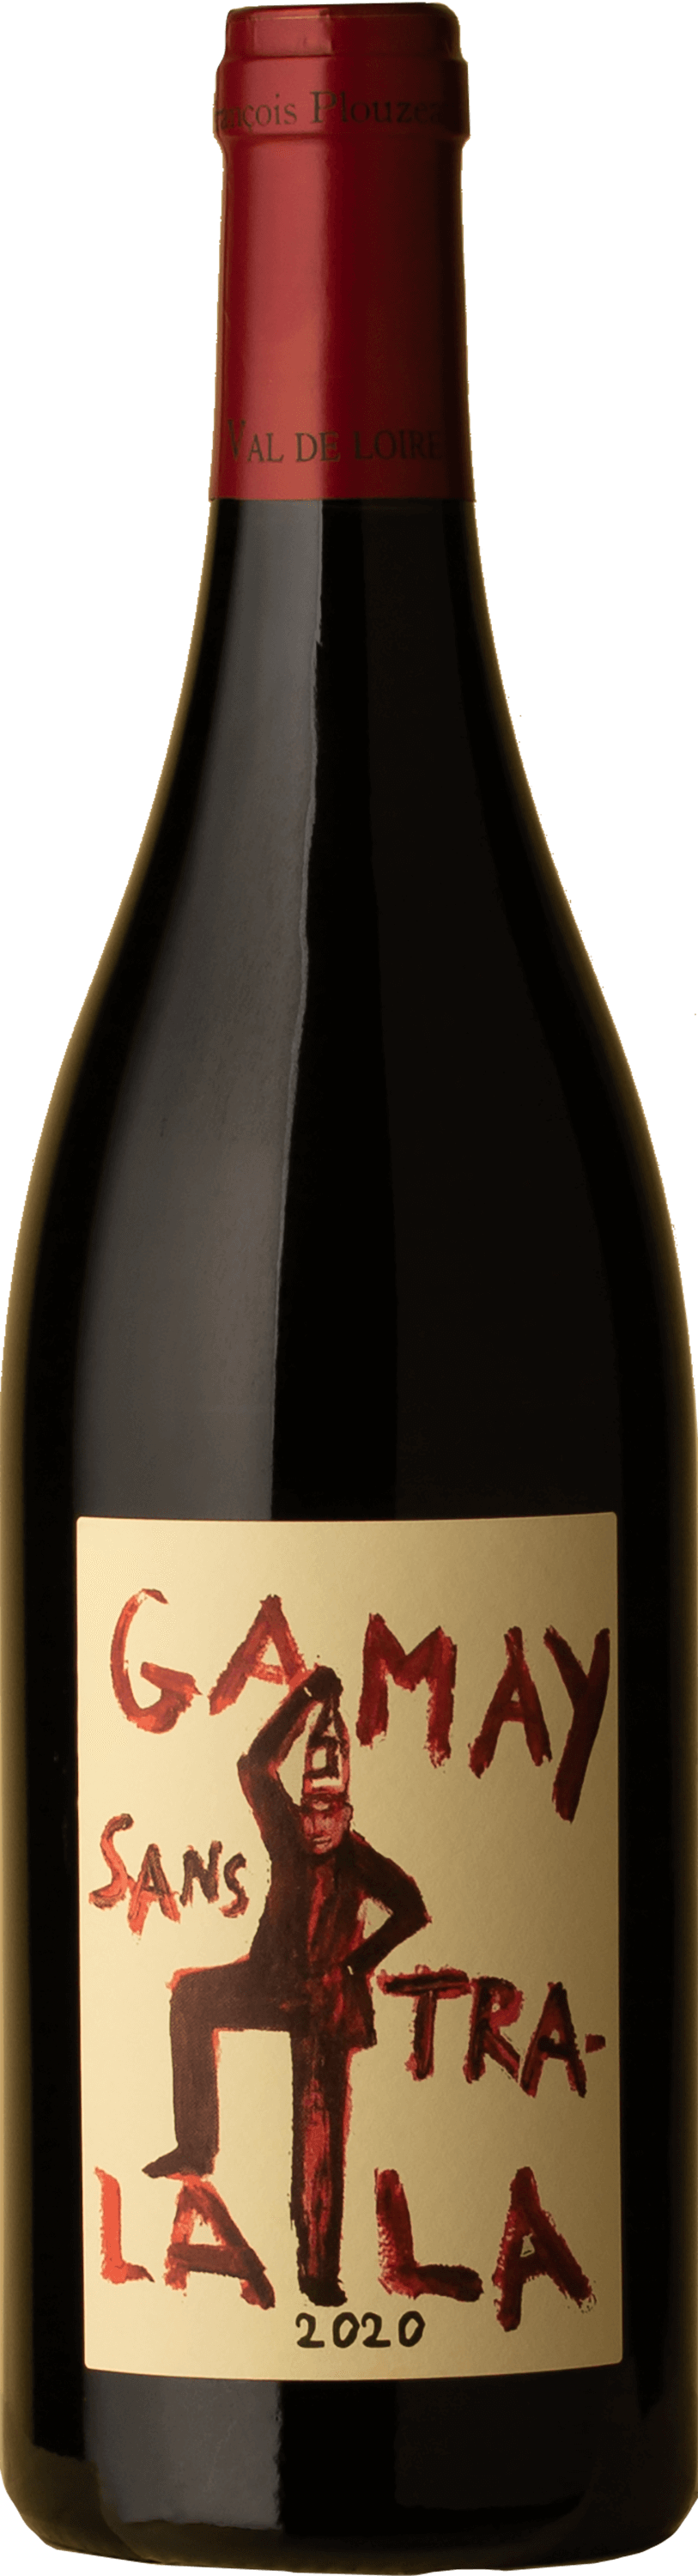 Domaine de la Garrelière - Touraine Gamay Sans Tra La La 2020 Red Wine